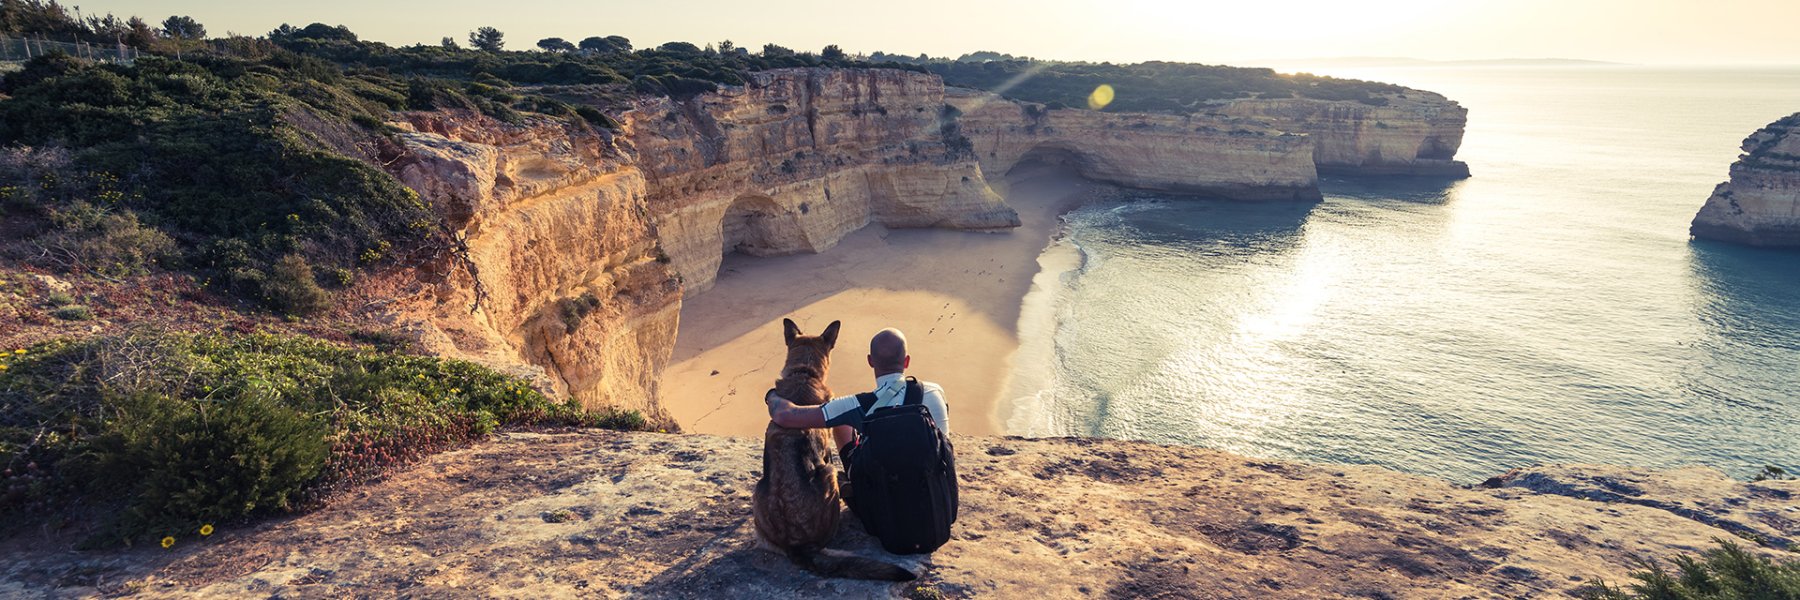 Ferienhausurlaub mit Hund in Portugal 